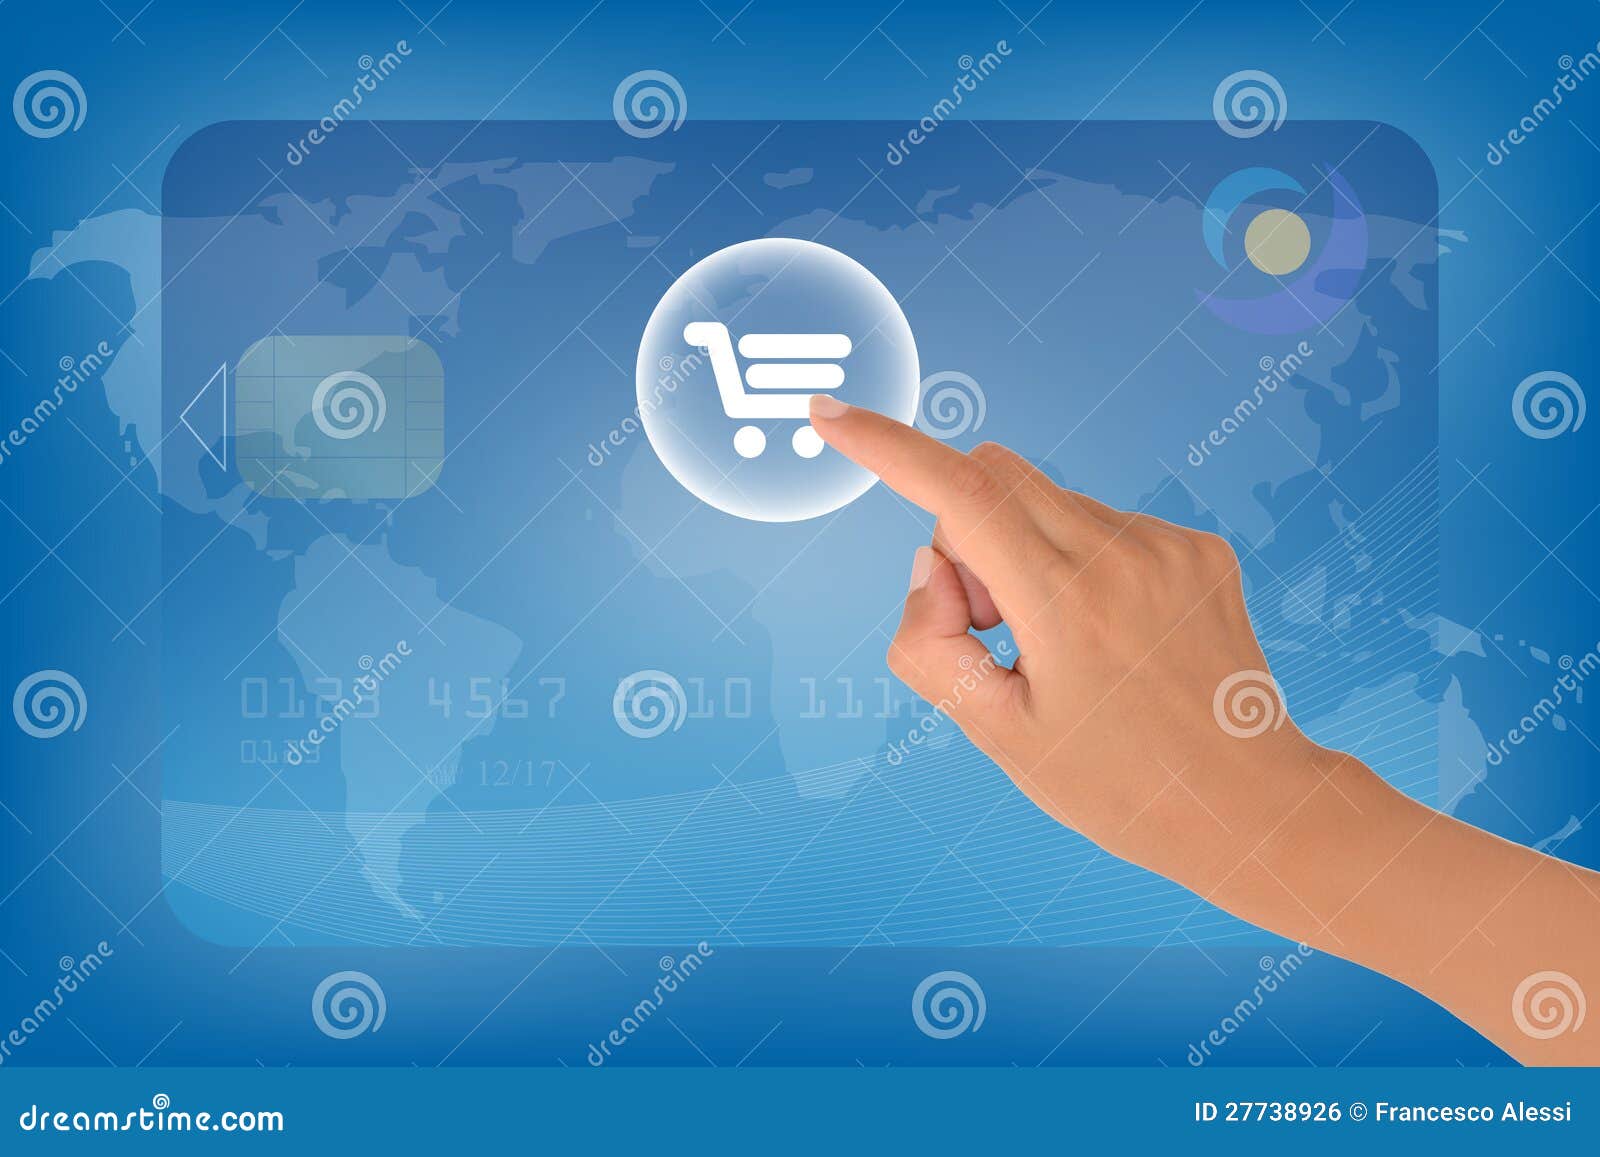 Elektronischer Geschäftsverkehr. Geschäftsverkehrkonzept mit einer weiblichen Hand, die auf Diagrammtaste klickt.